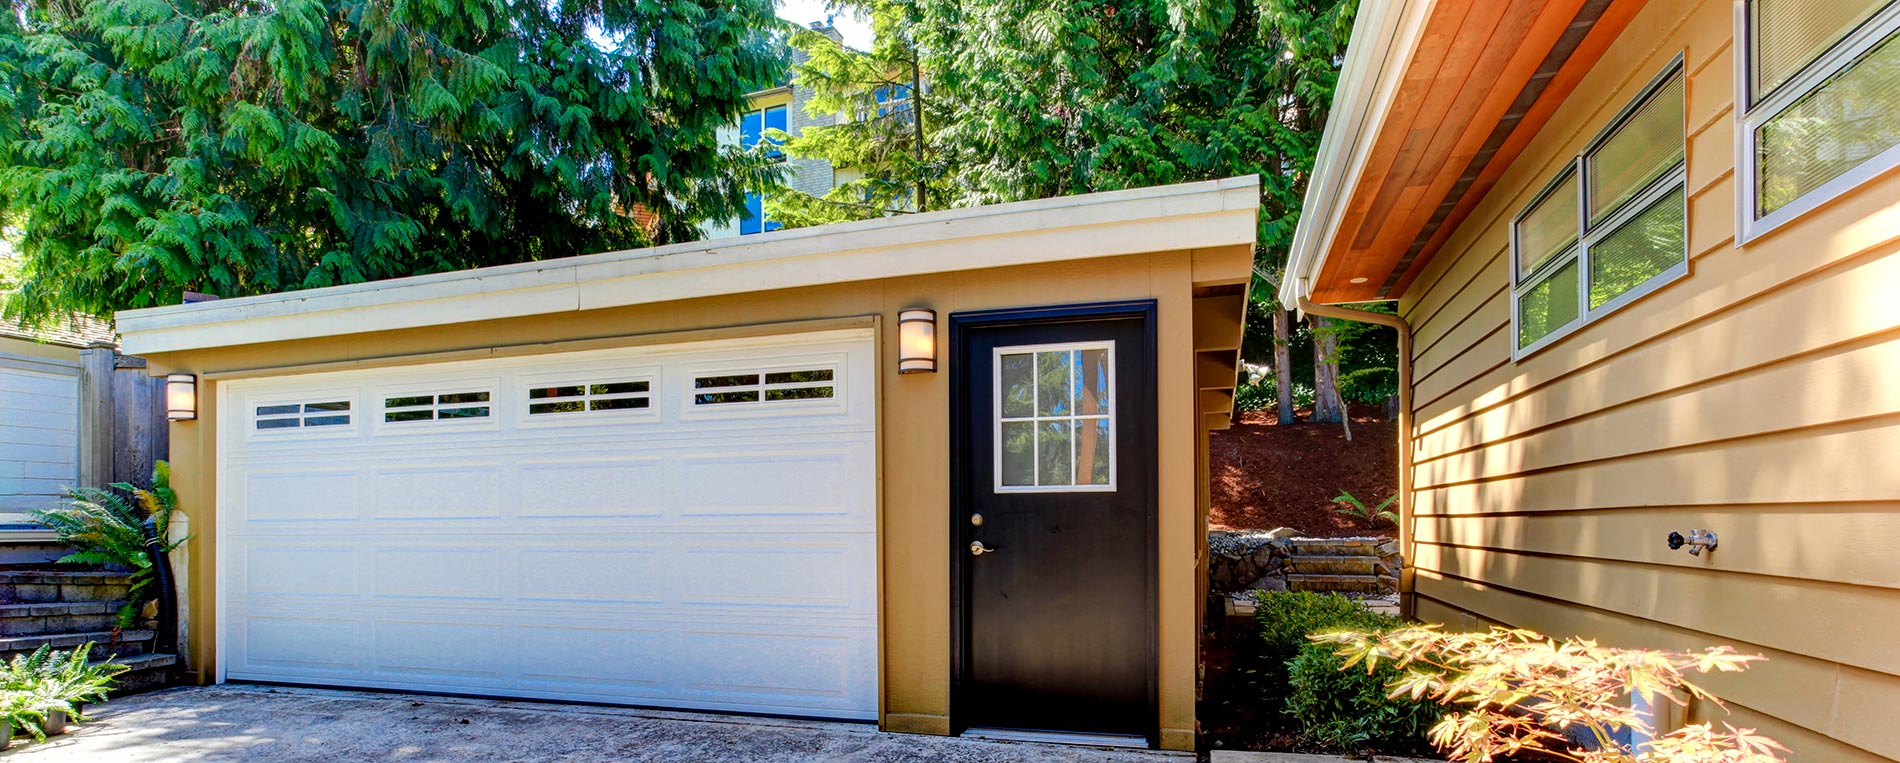 The Benefits of Effective Garage Door Insulation